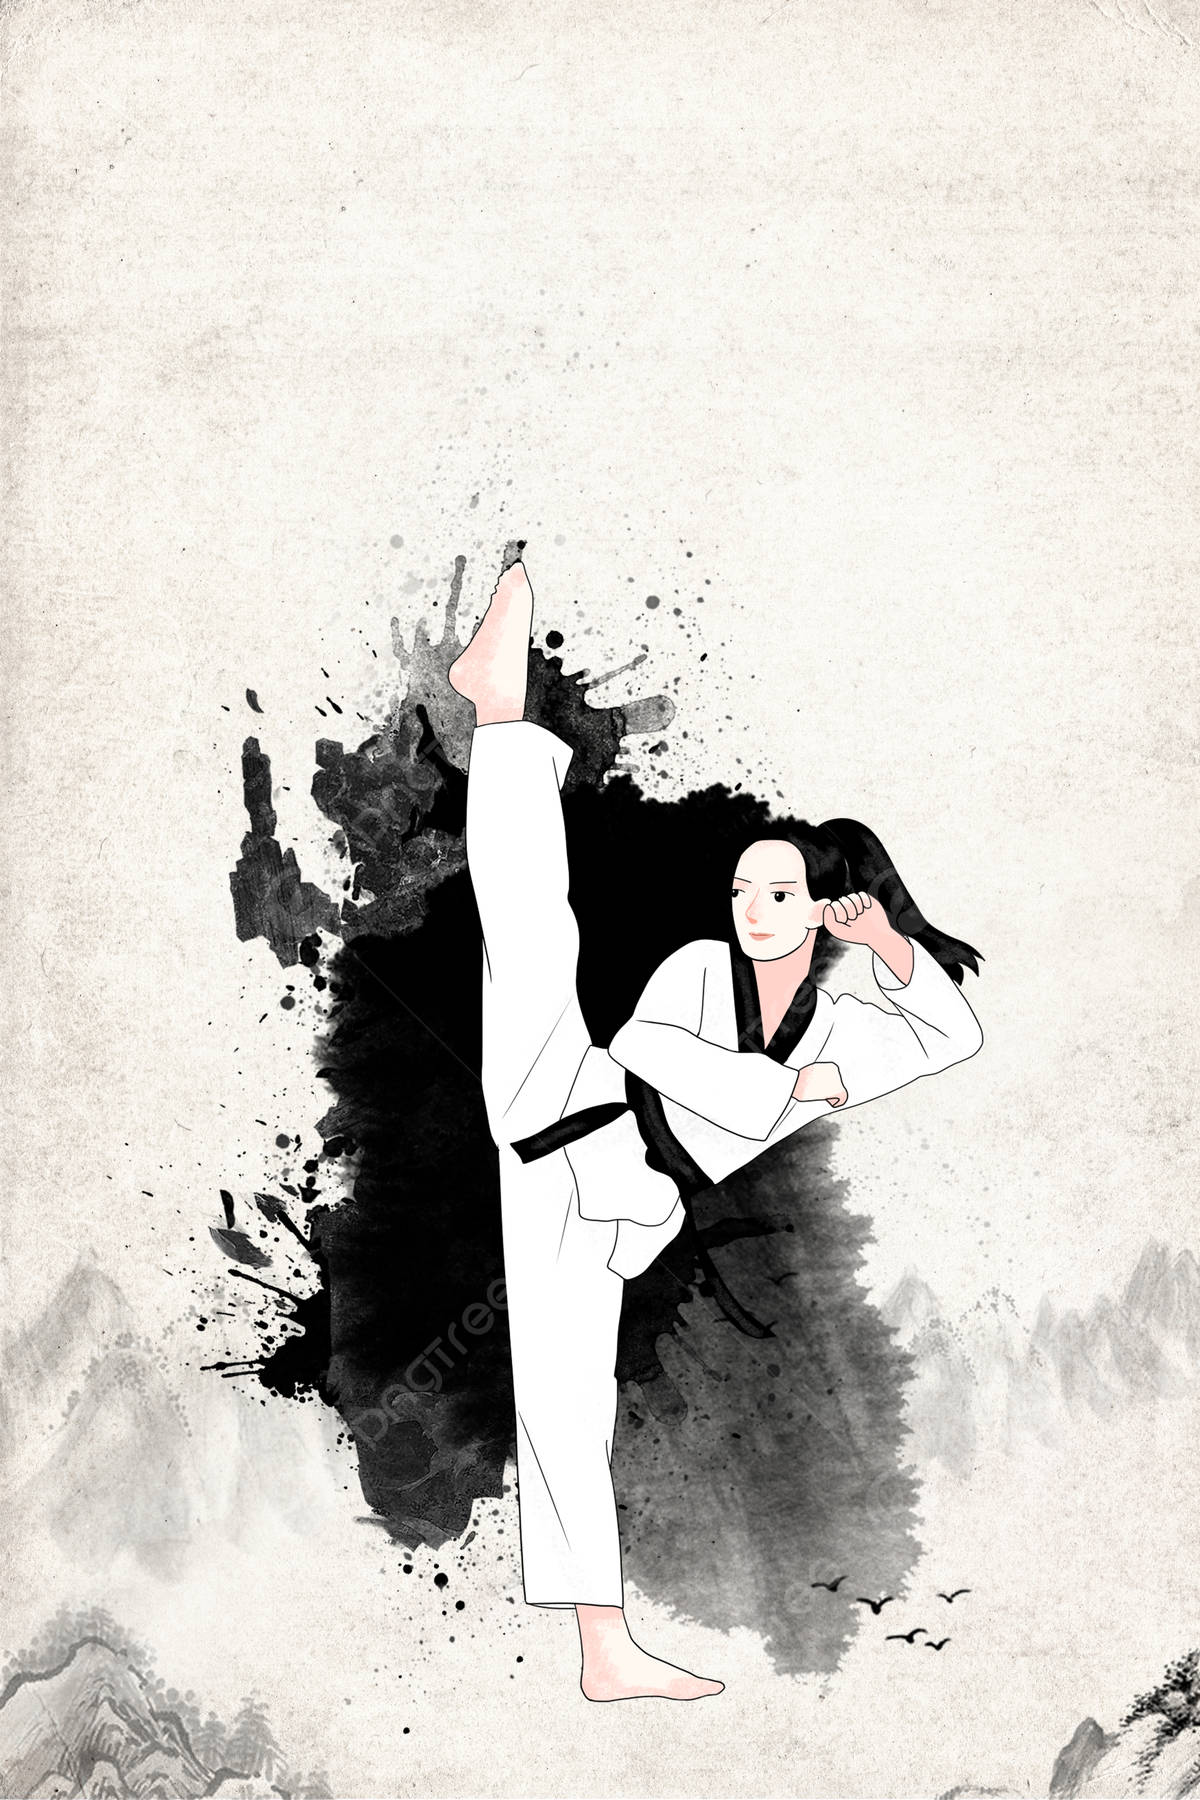 Gemäldeeines Taekwondo-mädchens Als Digitale Kunstwerk Wallpaper